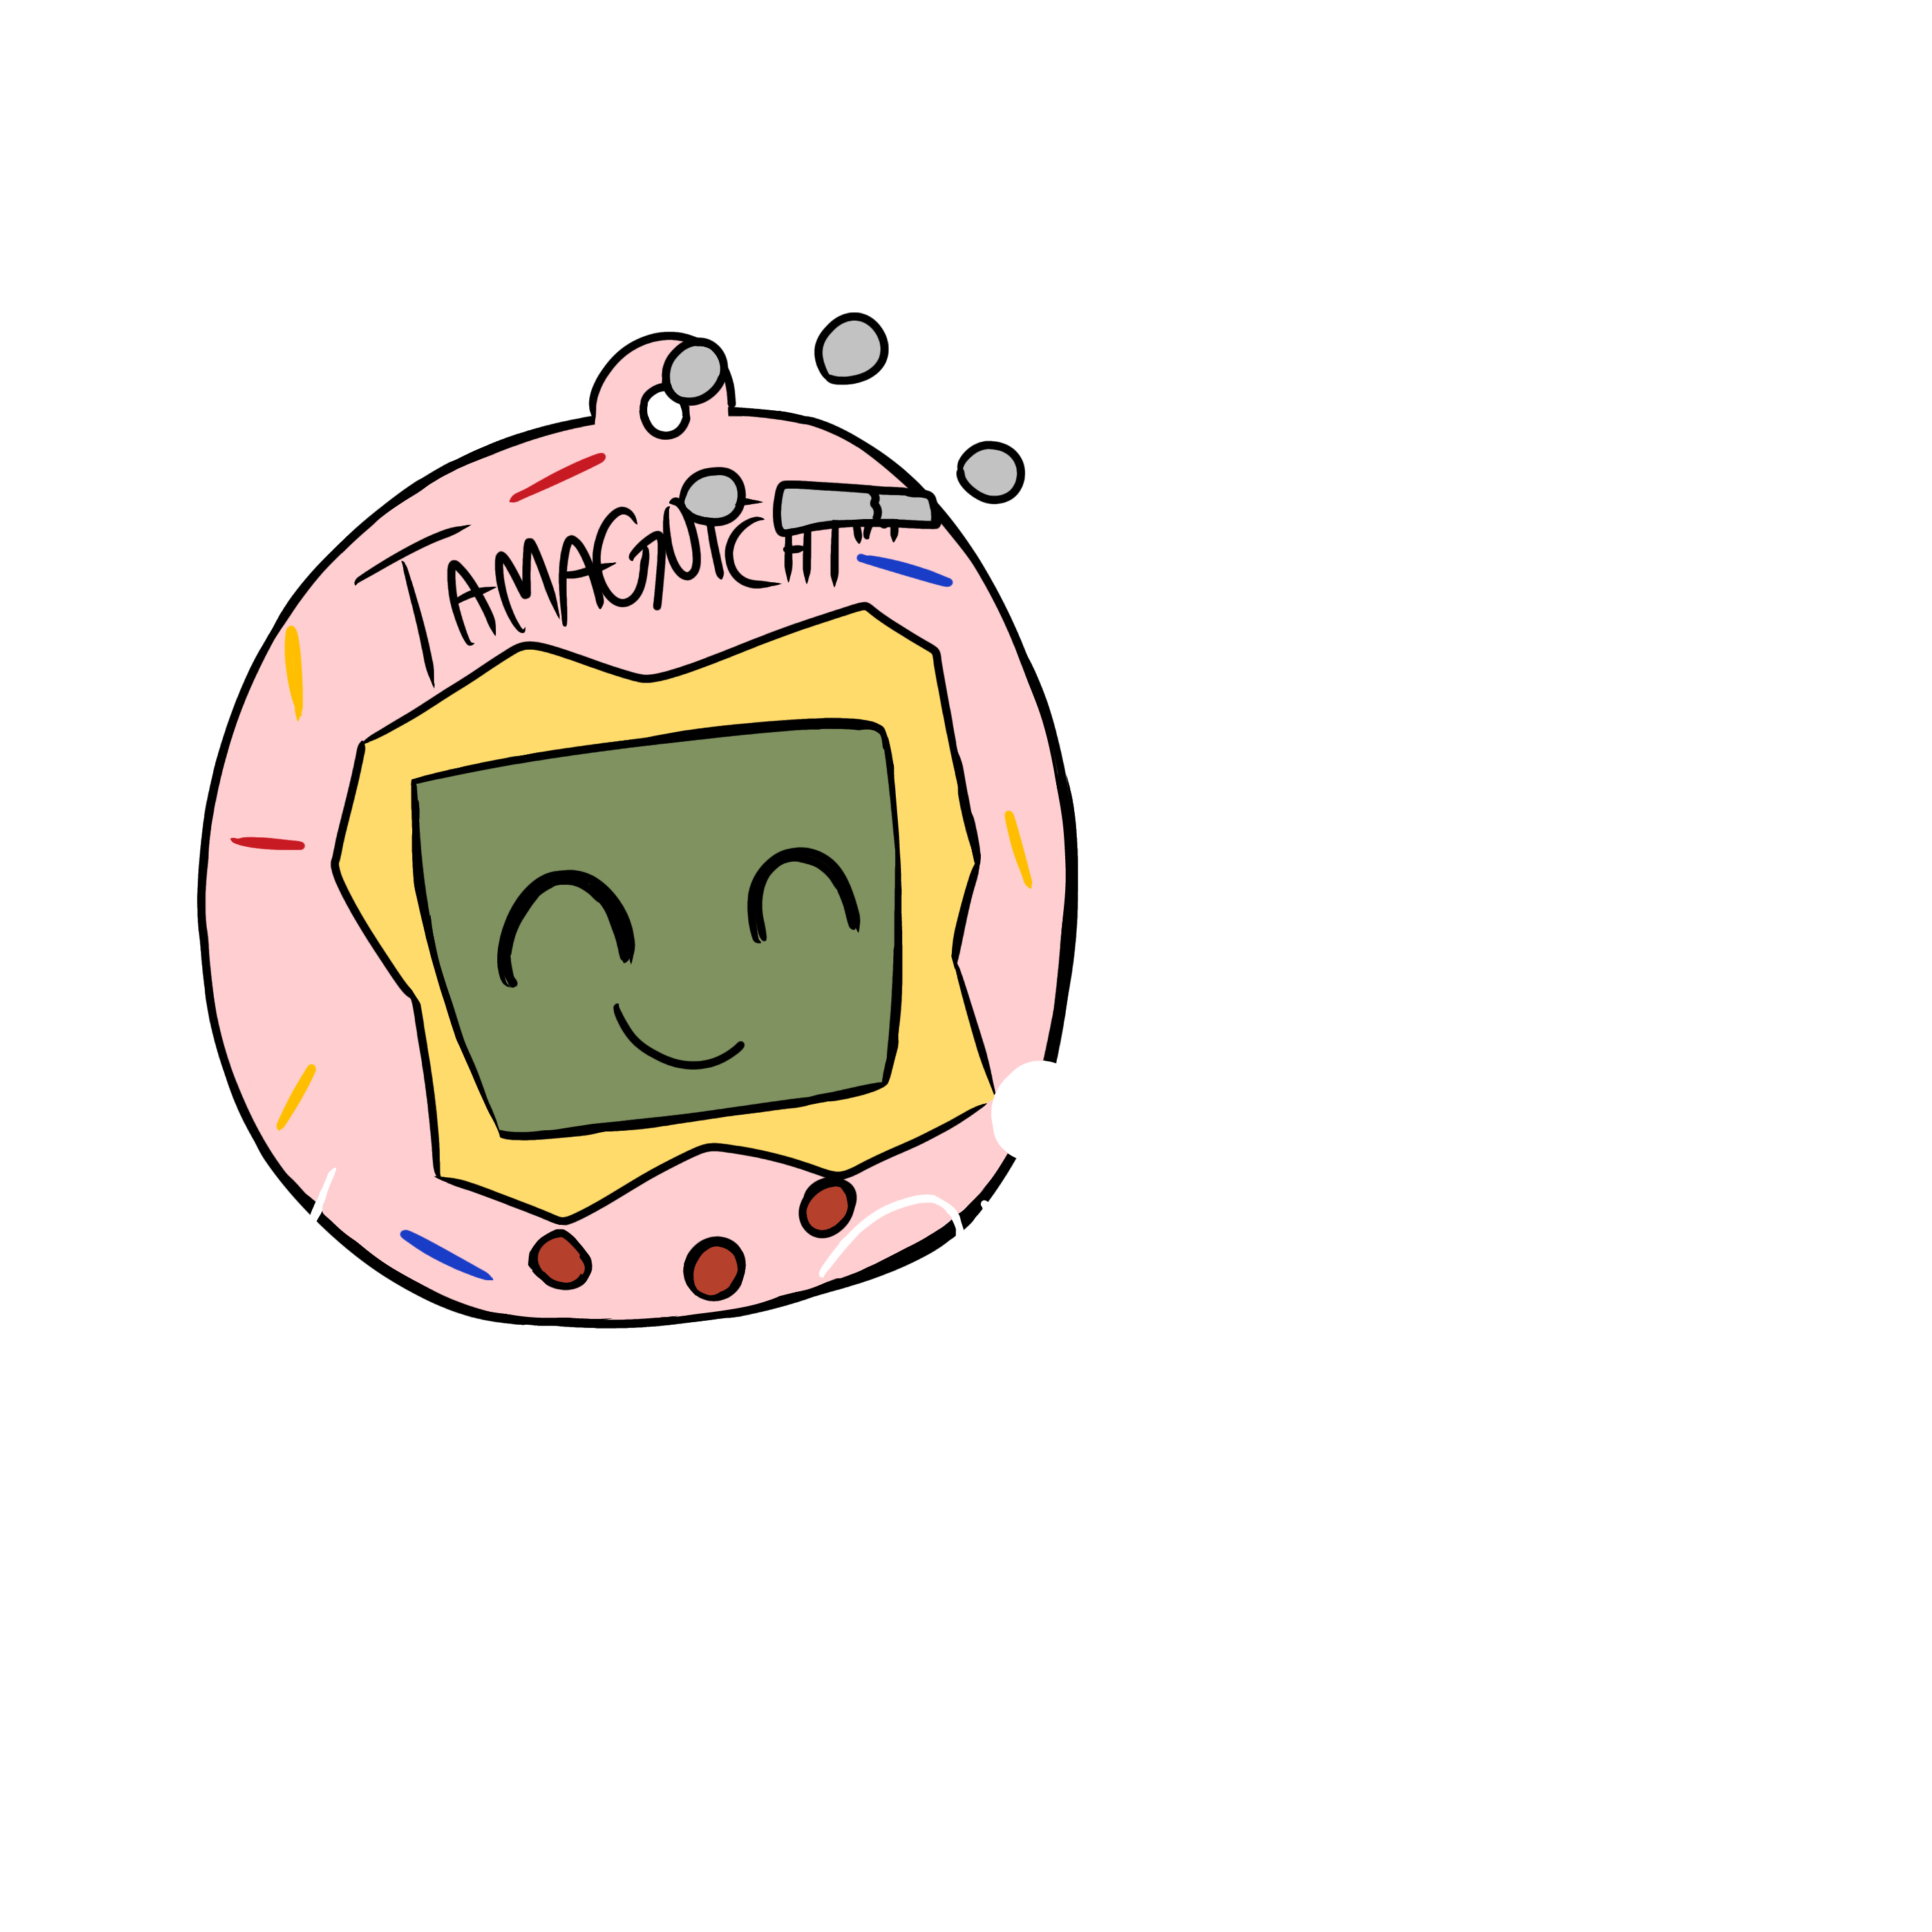 not found. . .